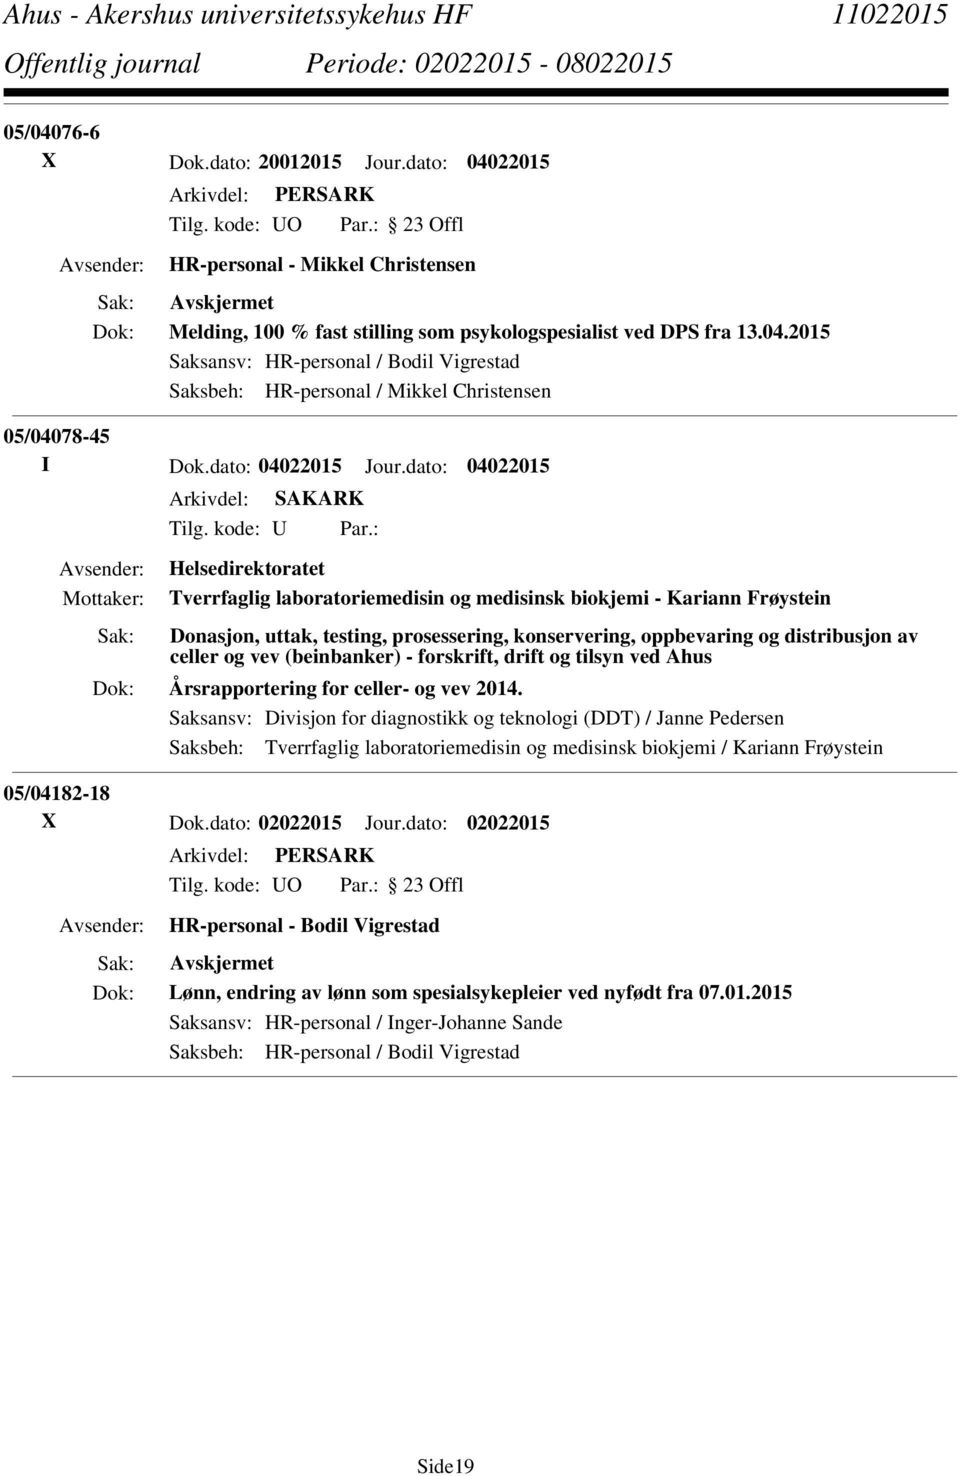 (beinbanker) - forskrift, drift og tilsyn ved Ahus Årsrapportering for celler- og vev 2014.